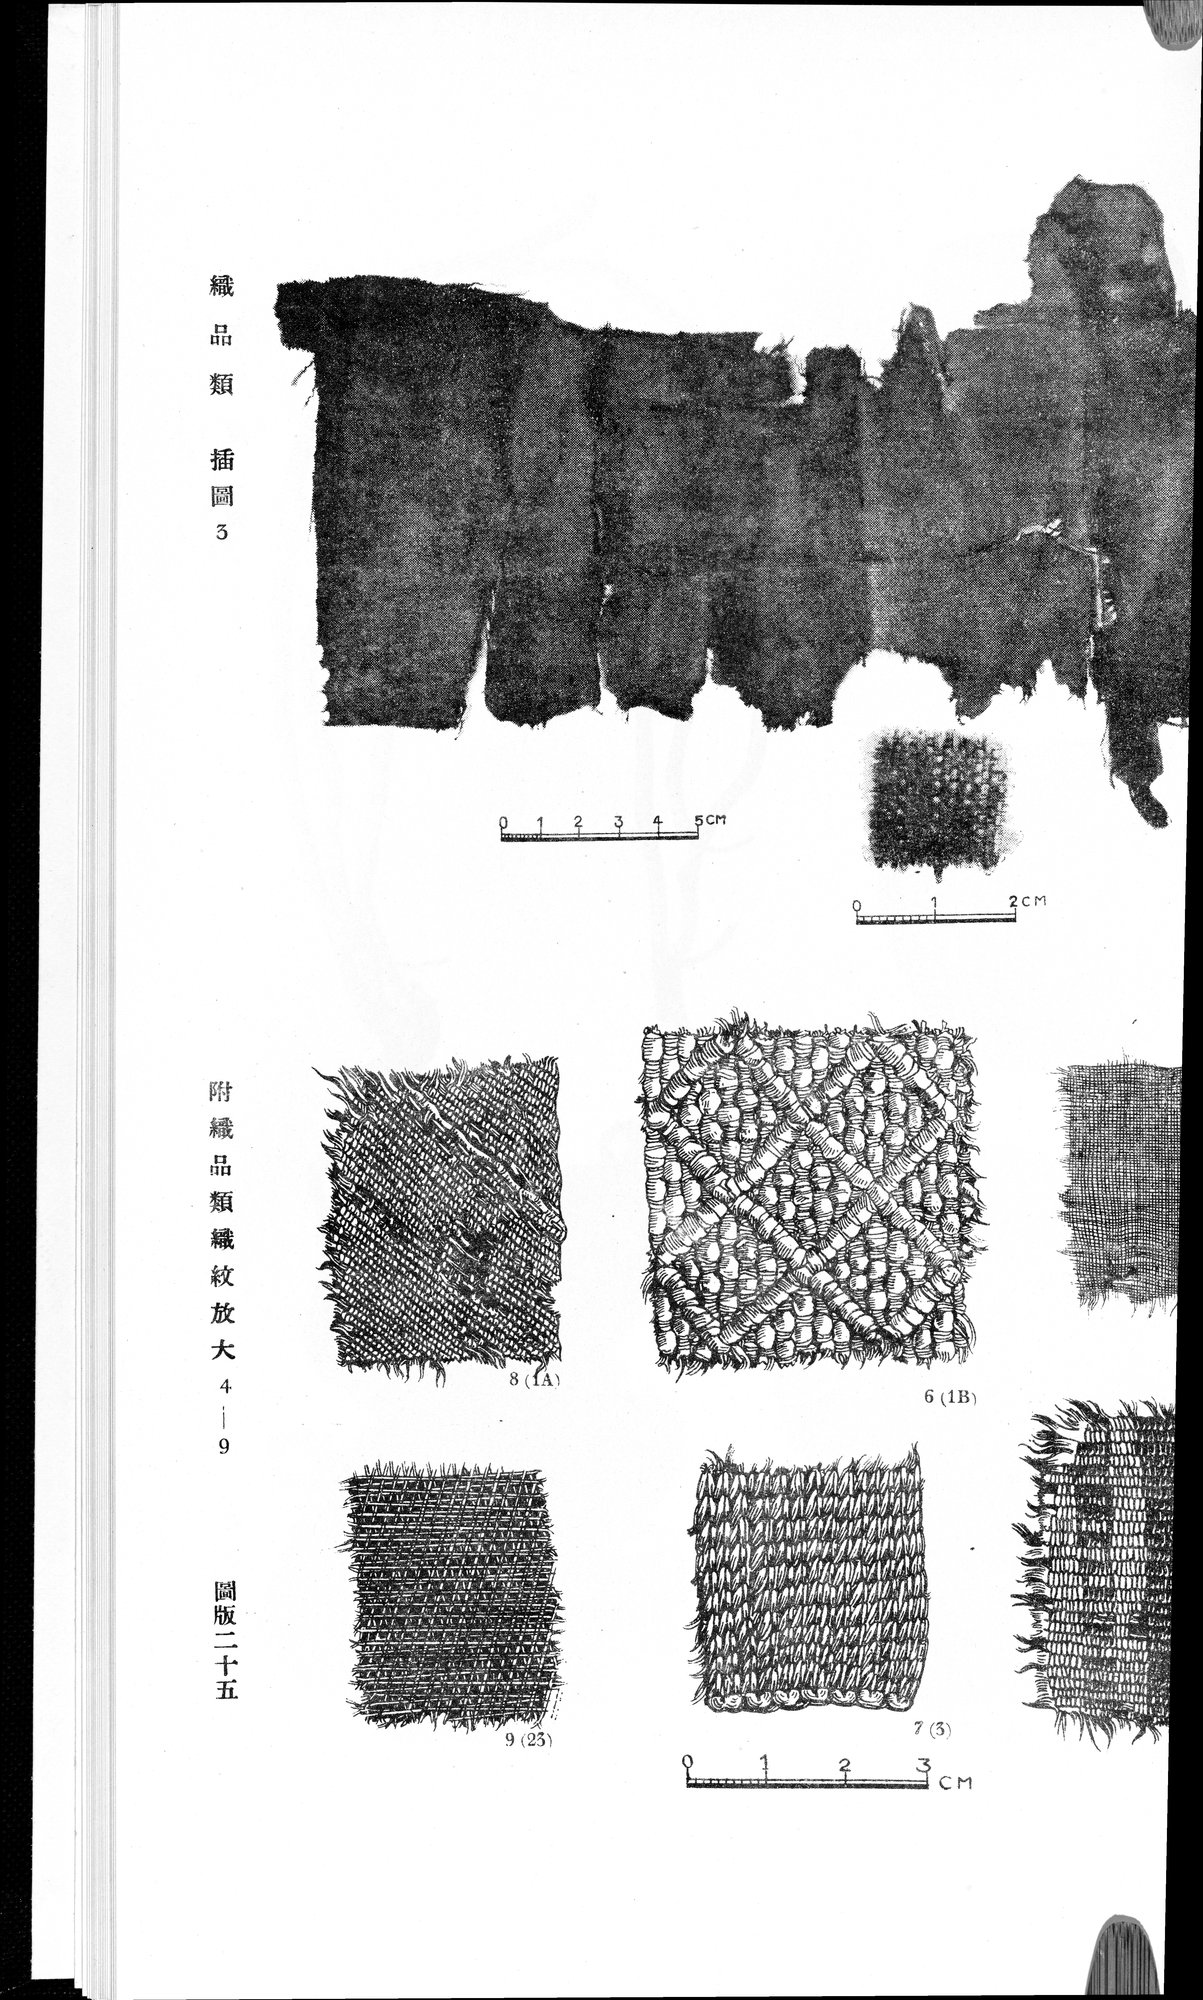 羅布淖爾考古記 : vol.1 / Page 341 (Grayscale High Resolution Image)